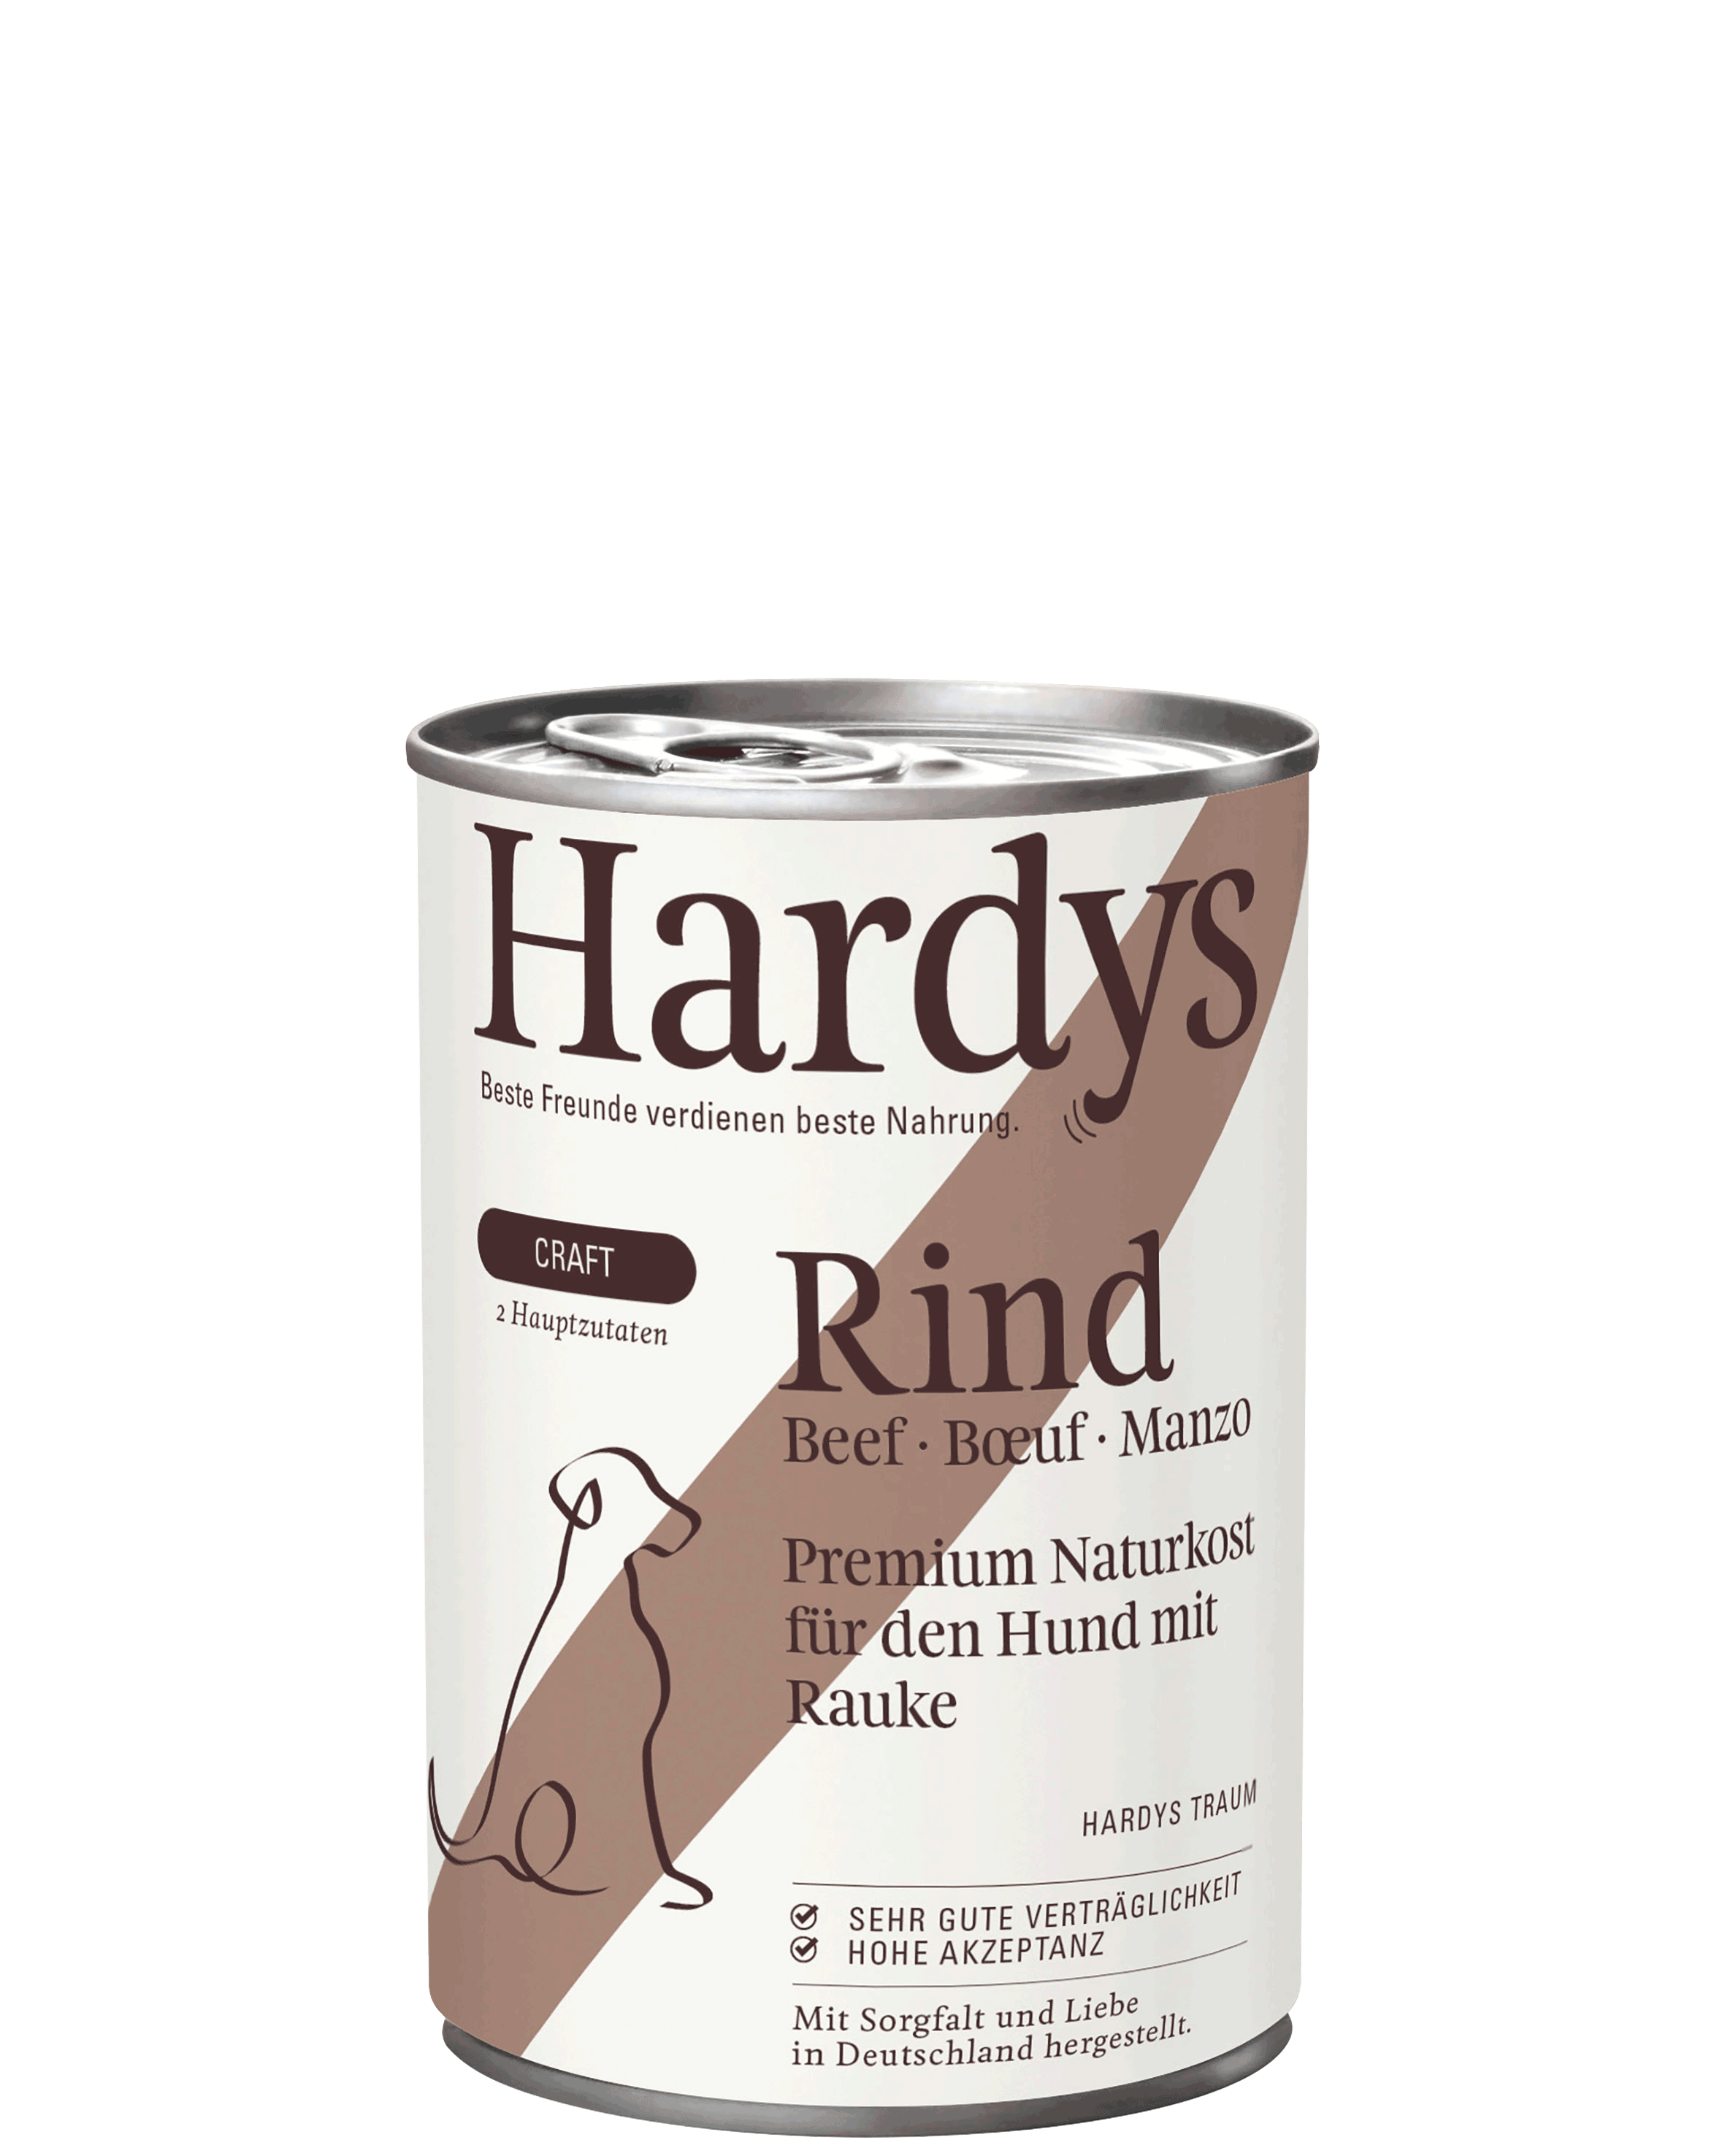 Hardys Craft Rind mit Rauke, 400 g